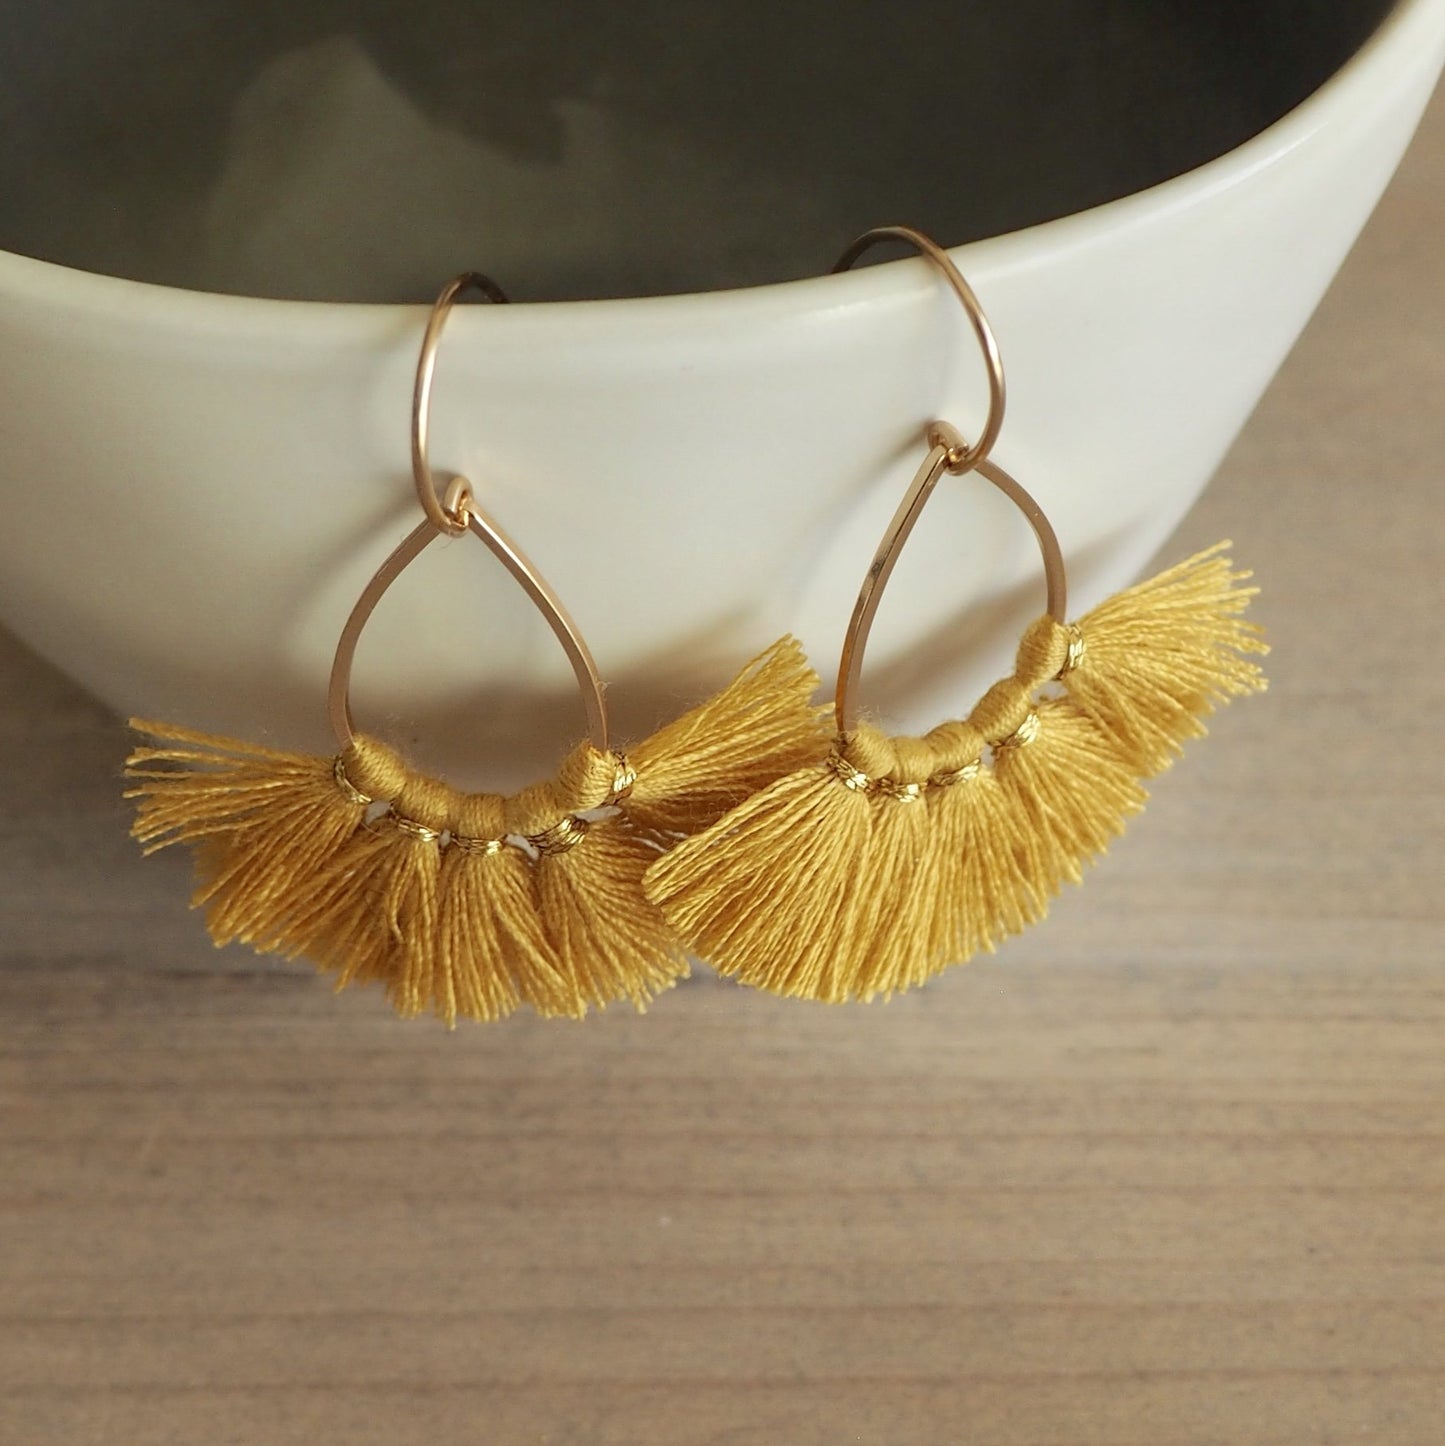 Mustard Gold Tassel Earrings by Wallis Designs in Canada